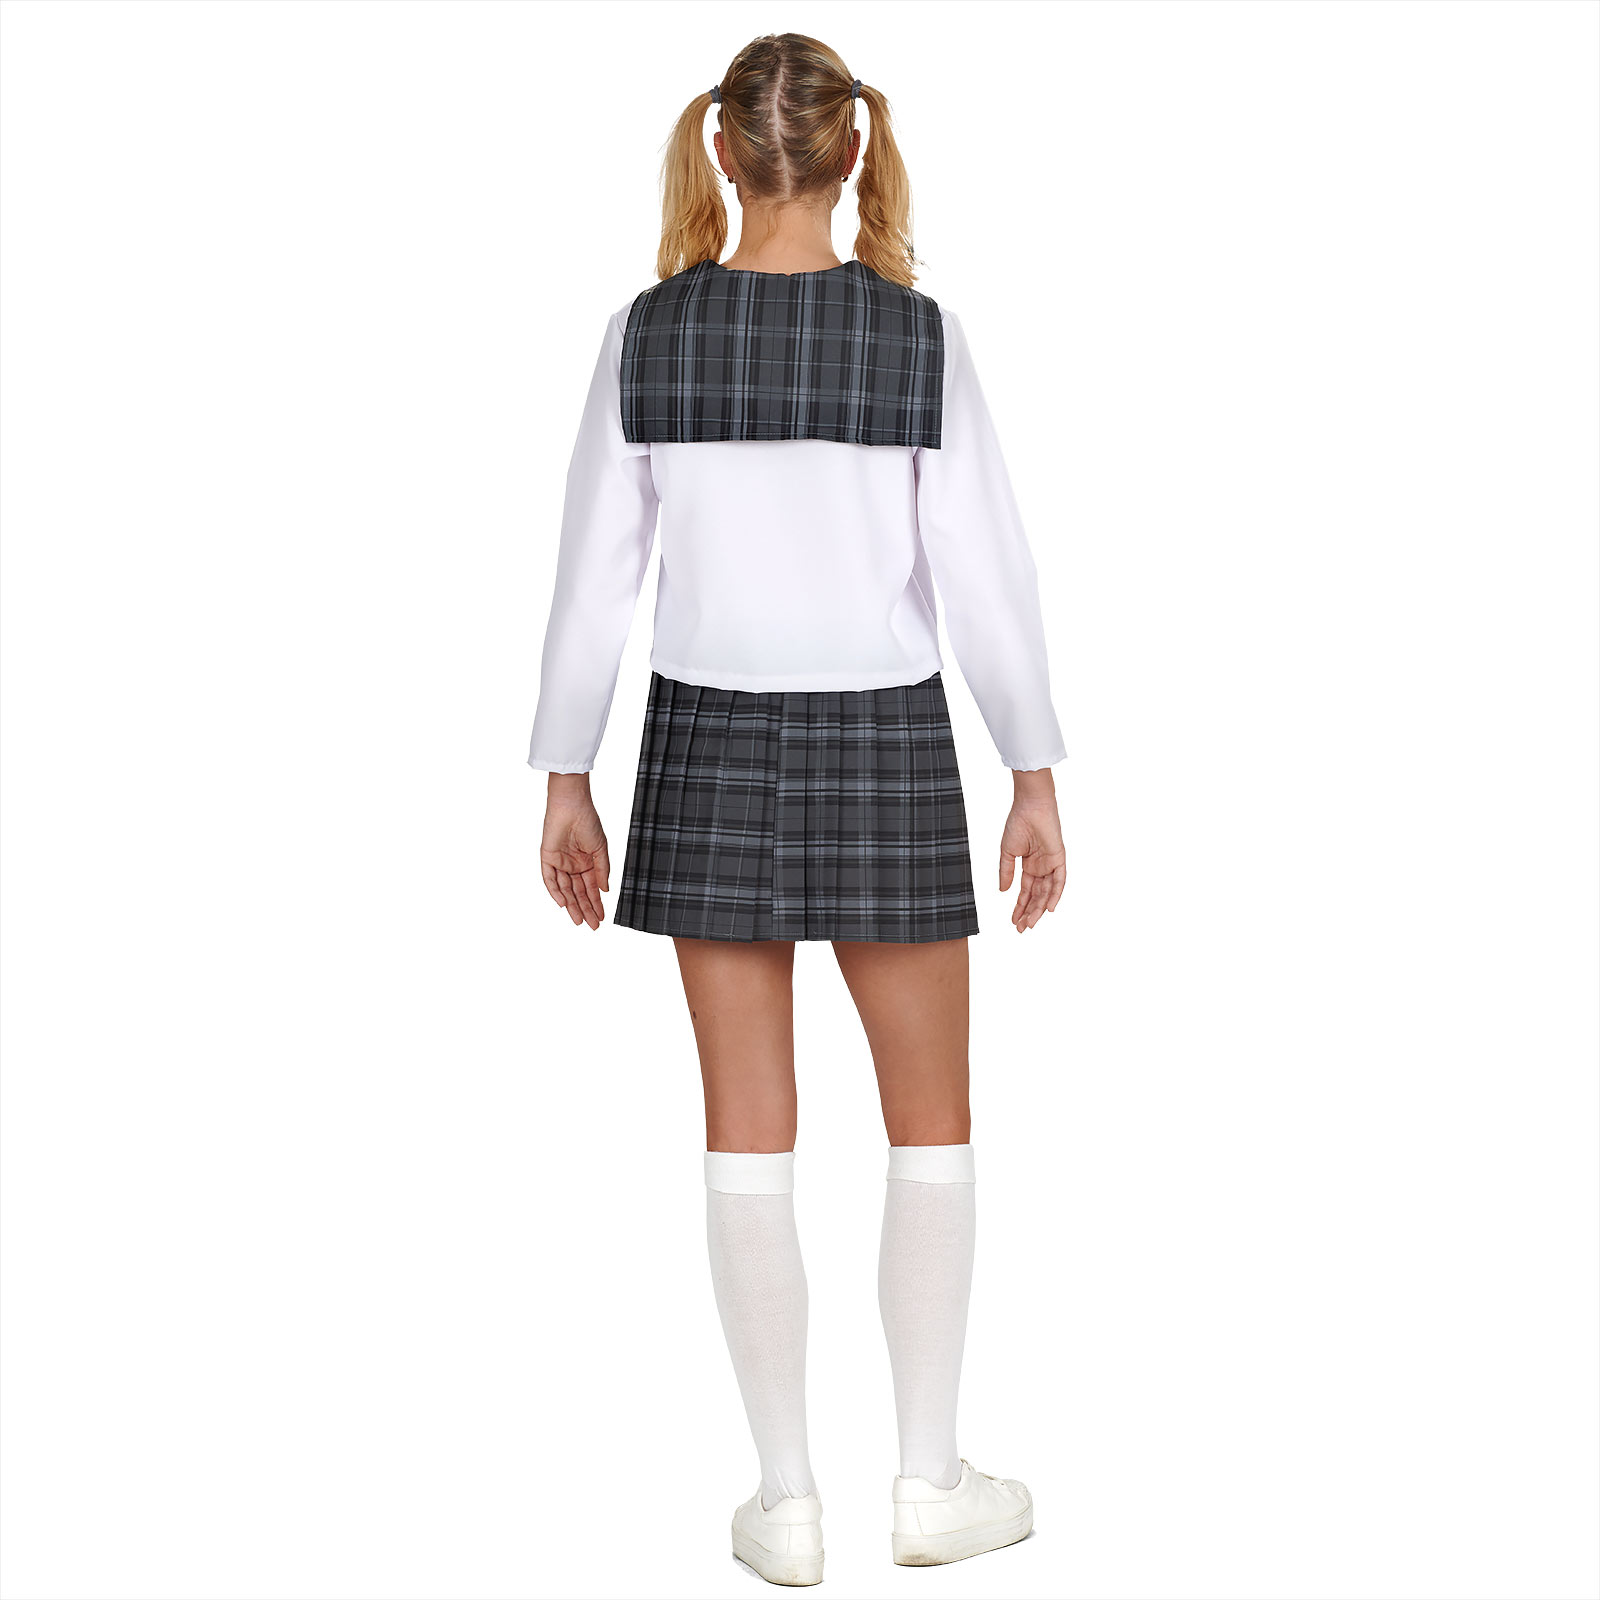 Cosplay School Girl Costume for Women